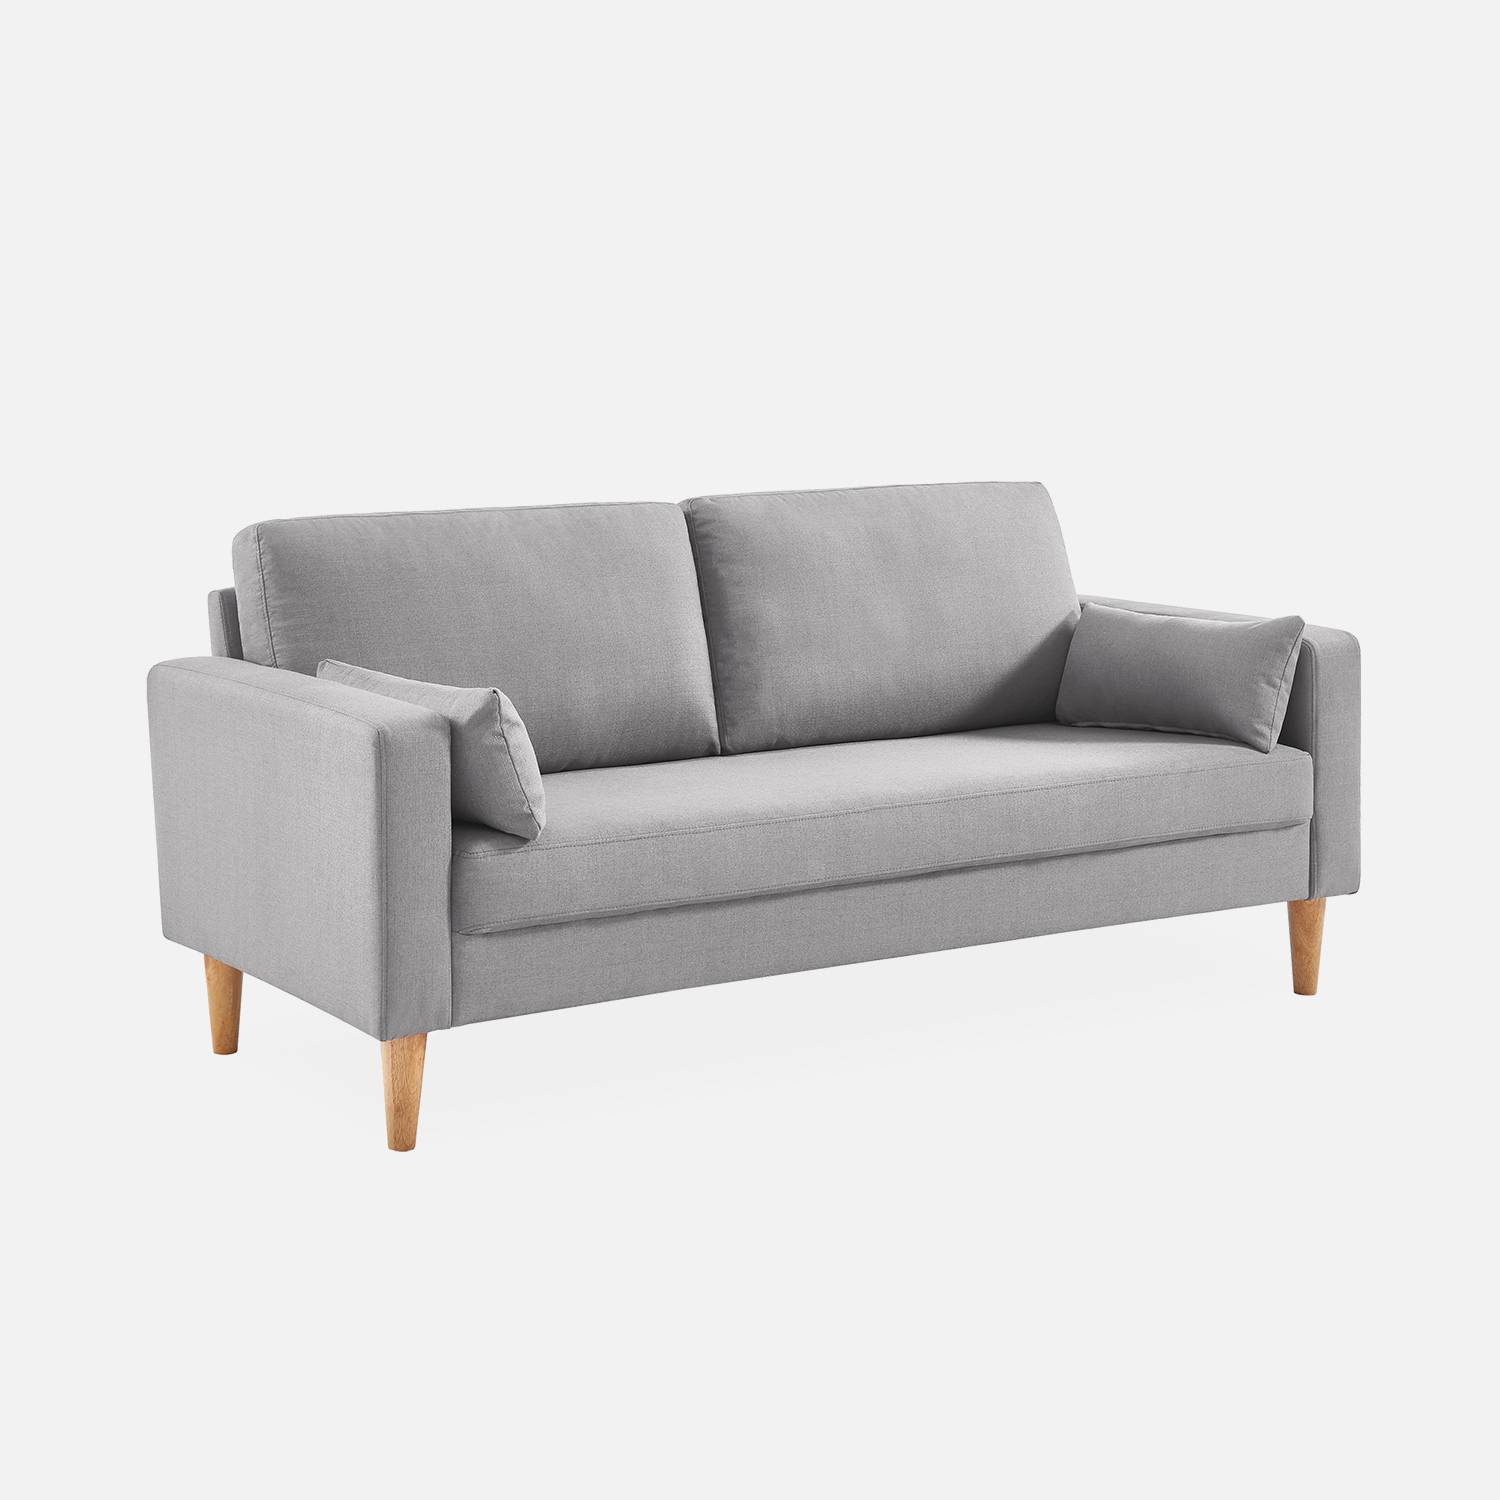 Canapé en tissu gris clair - Bjorn - Canapé 3 places fixe droit pieds bois, style scandinave   Photo2